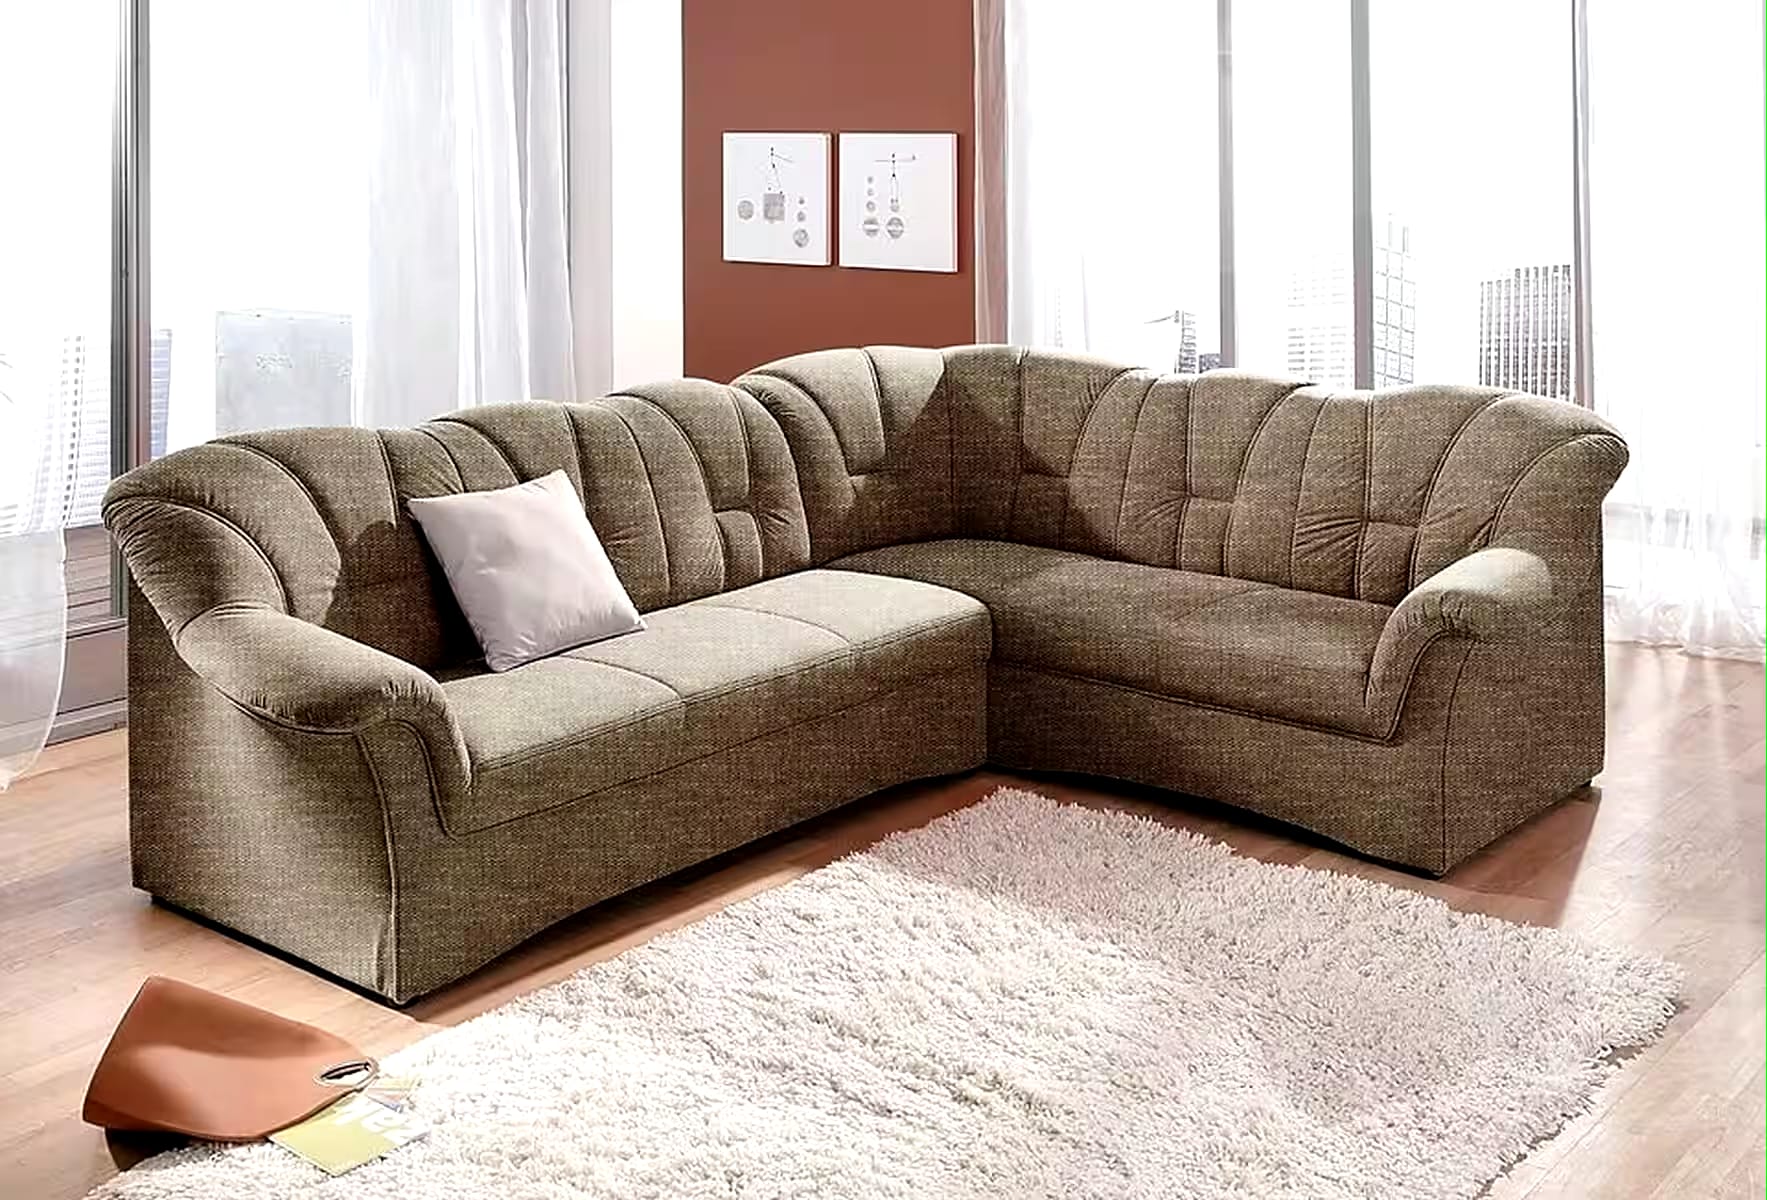 Sofa - Papenburgo N.º de artículo 6459815339